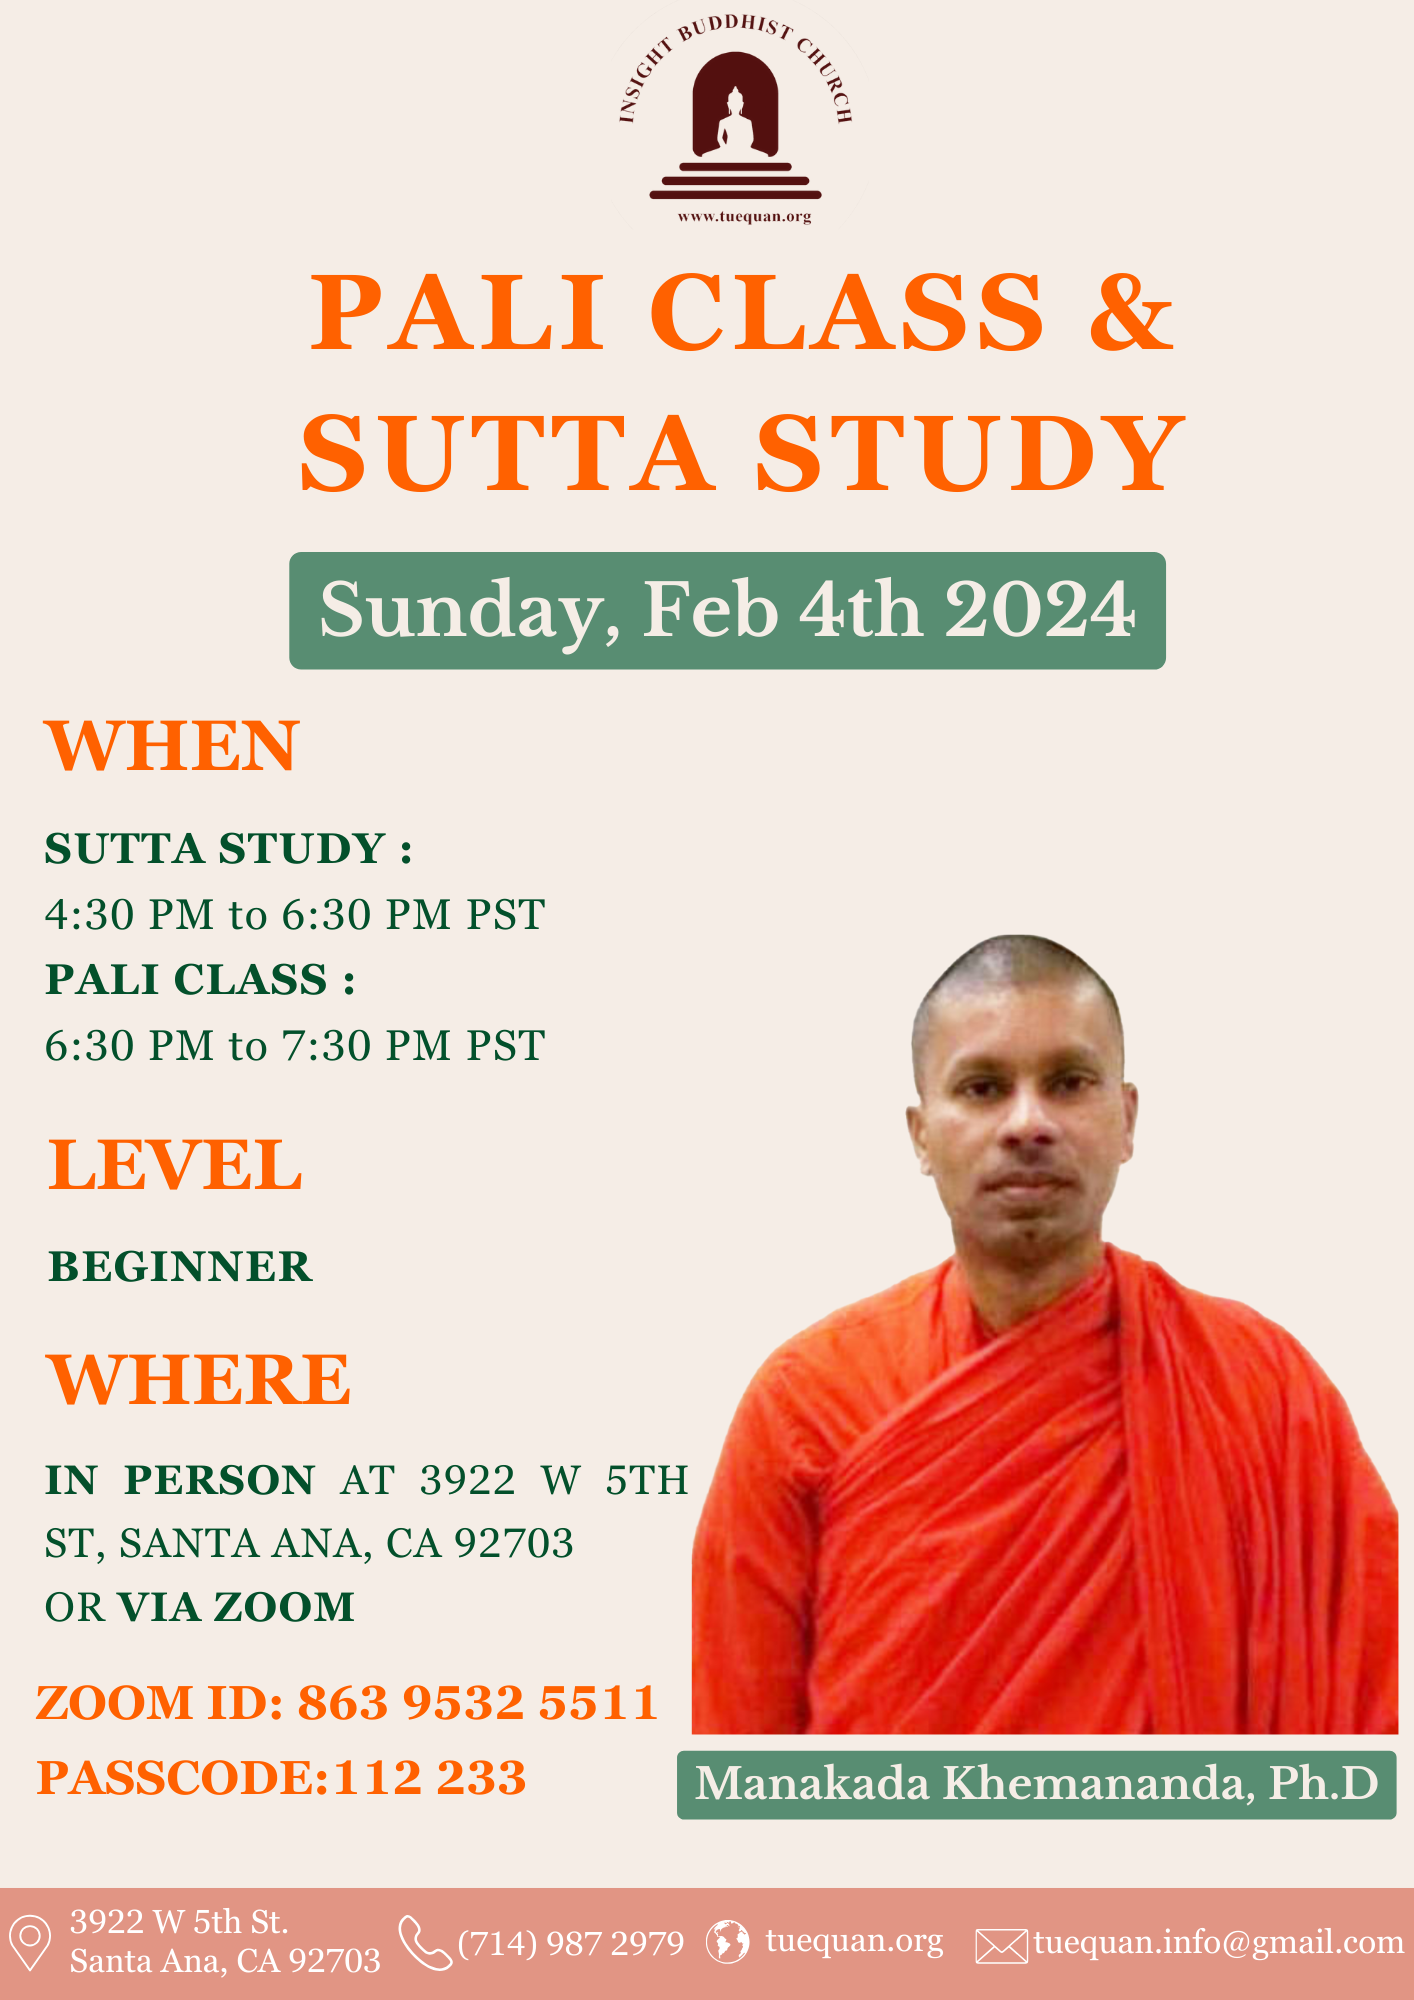 Pali class & Sutta study, Feb 4th 2024